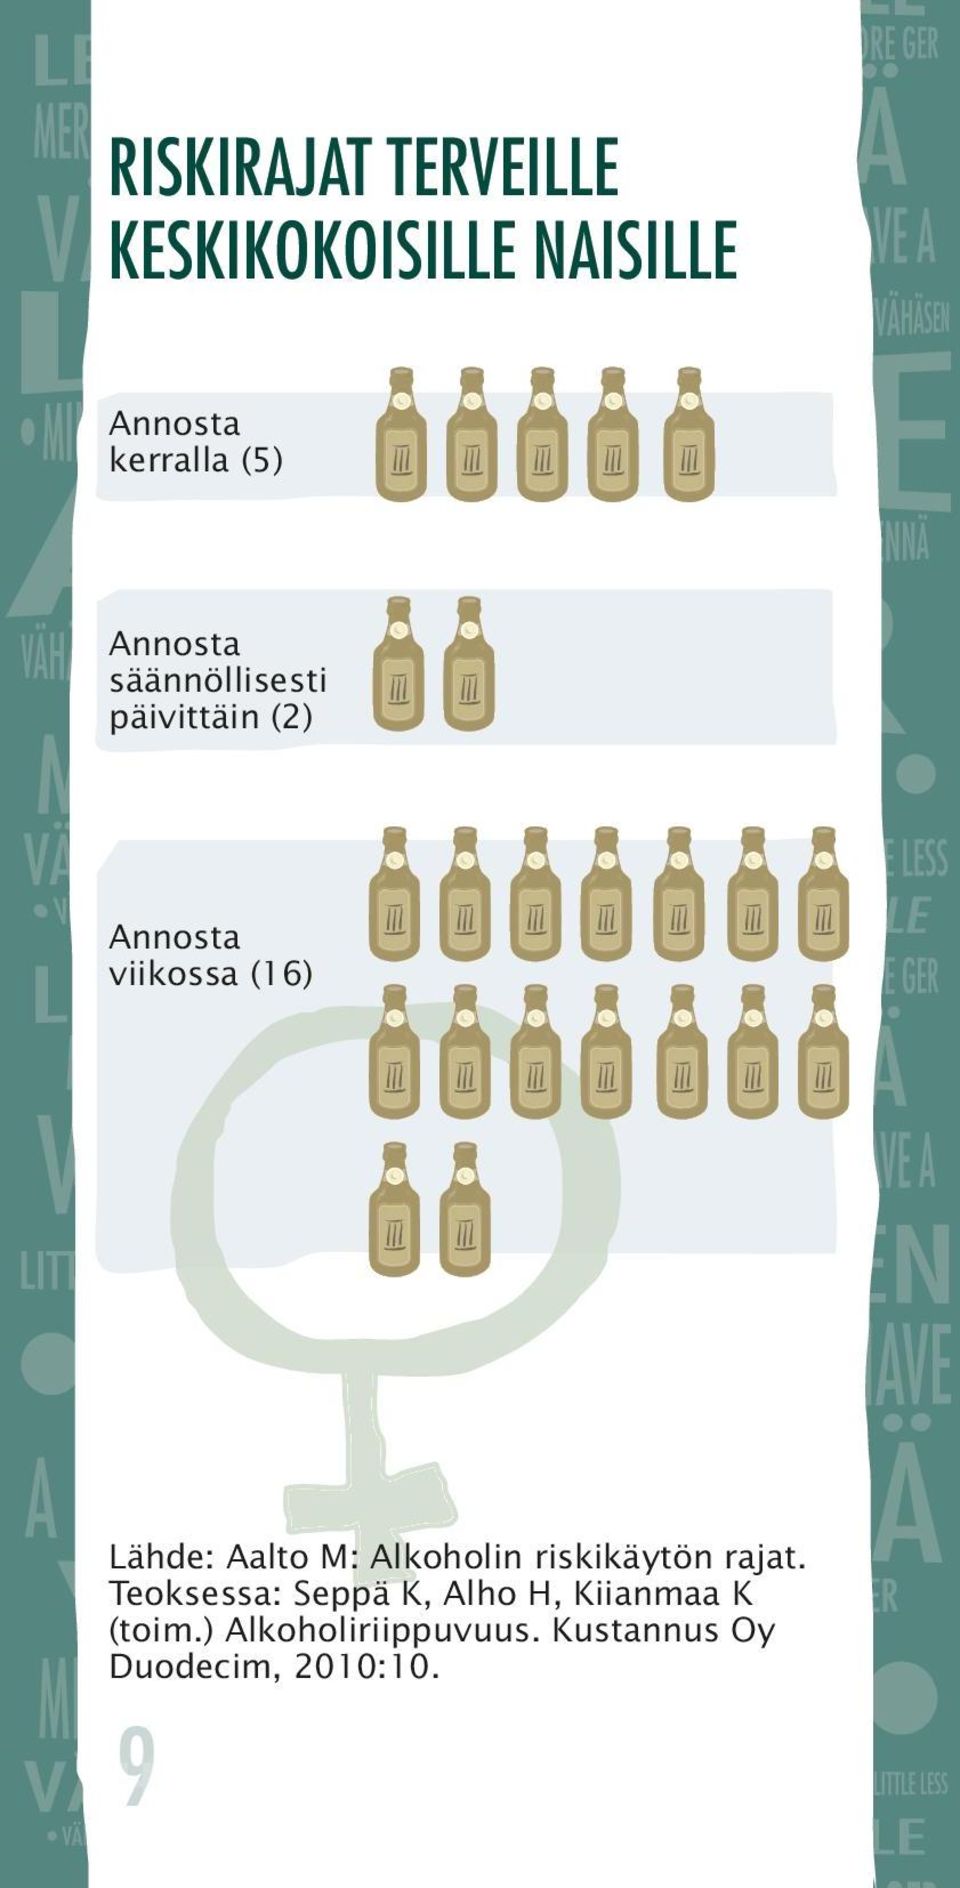 Aalto M: Alkoholin riskikäytön rajat.